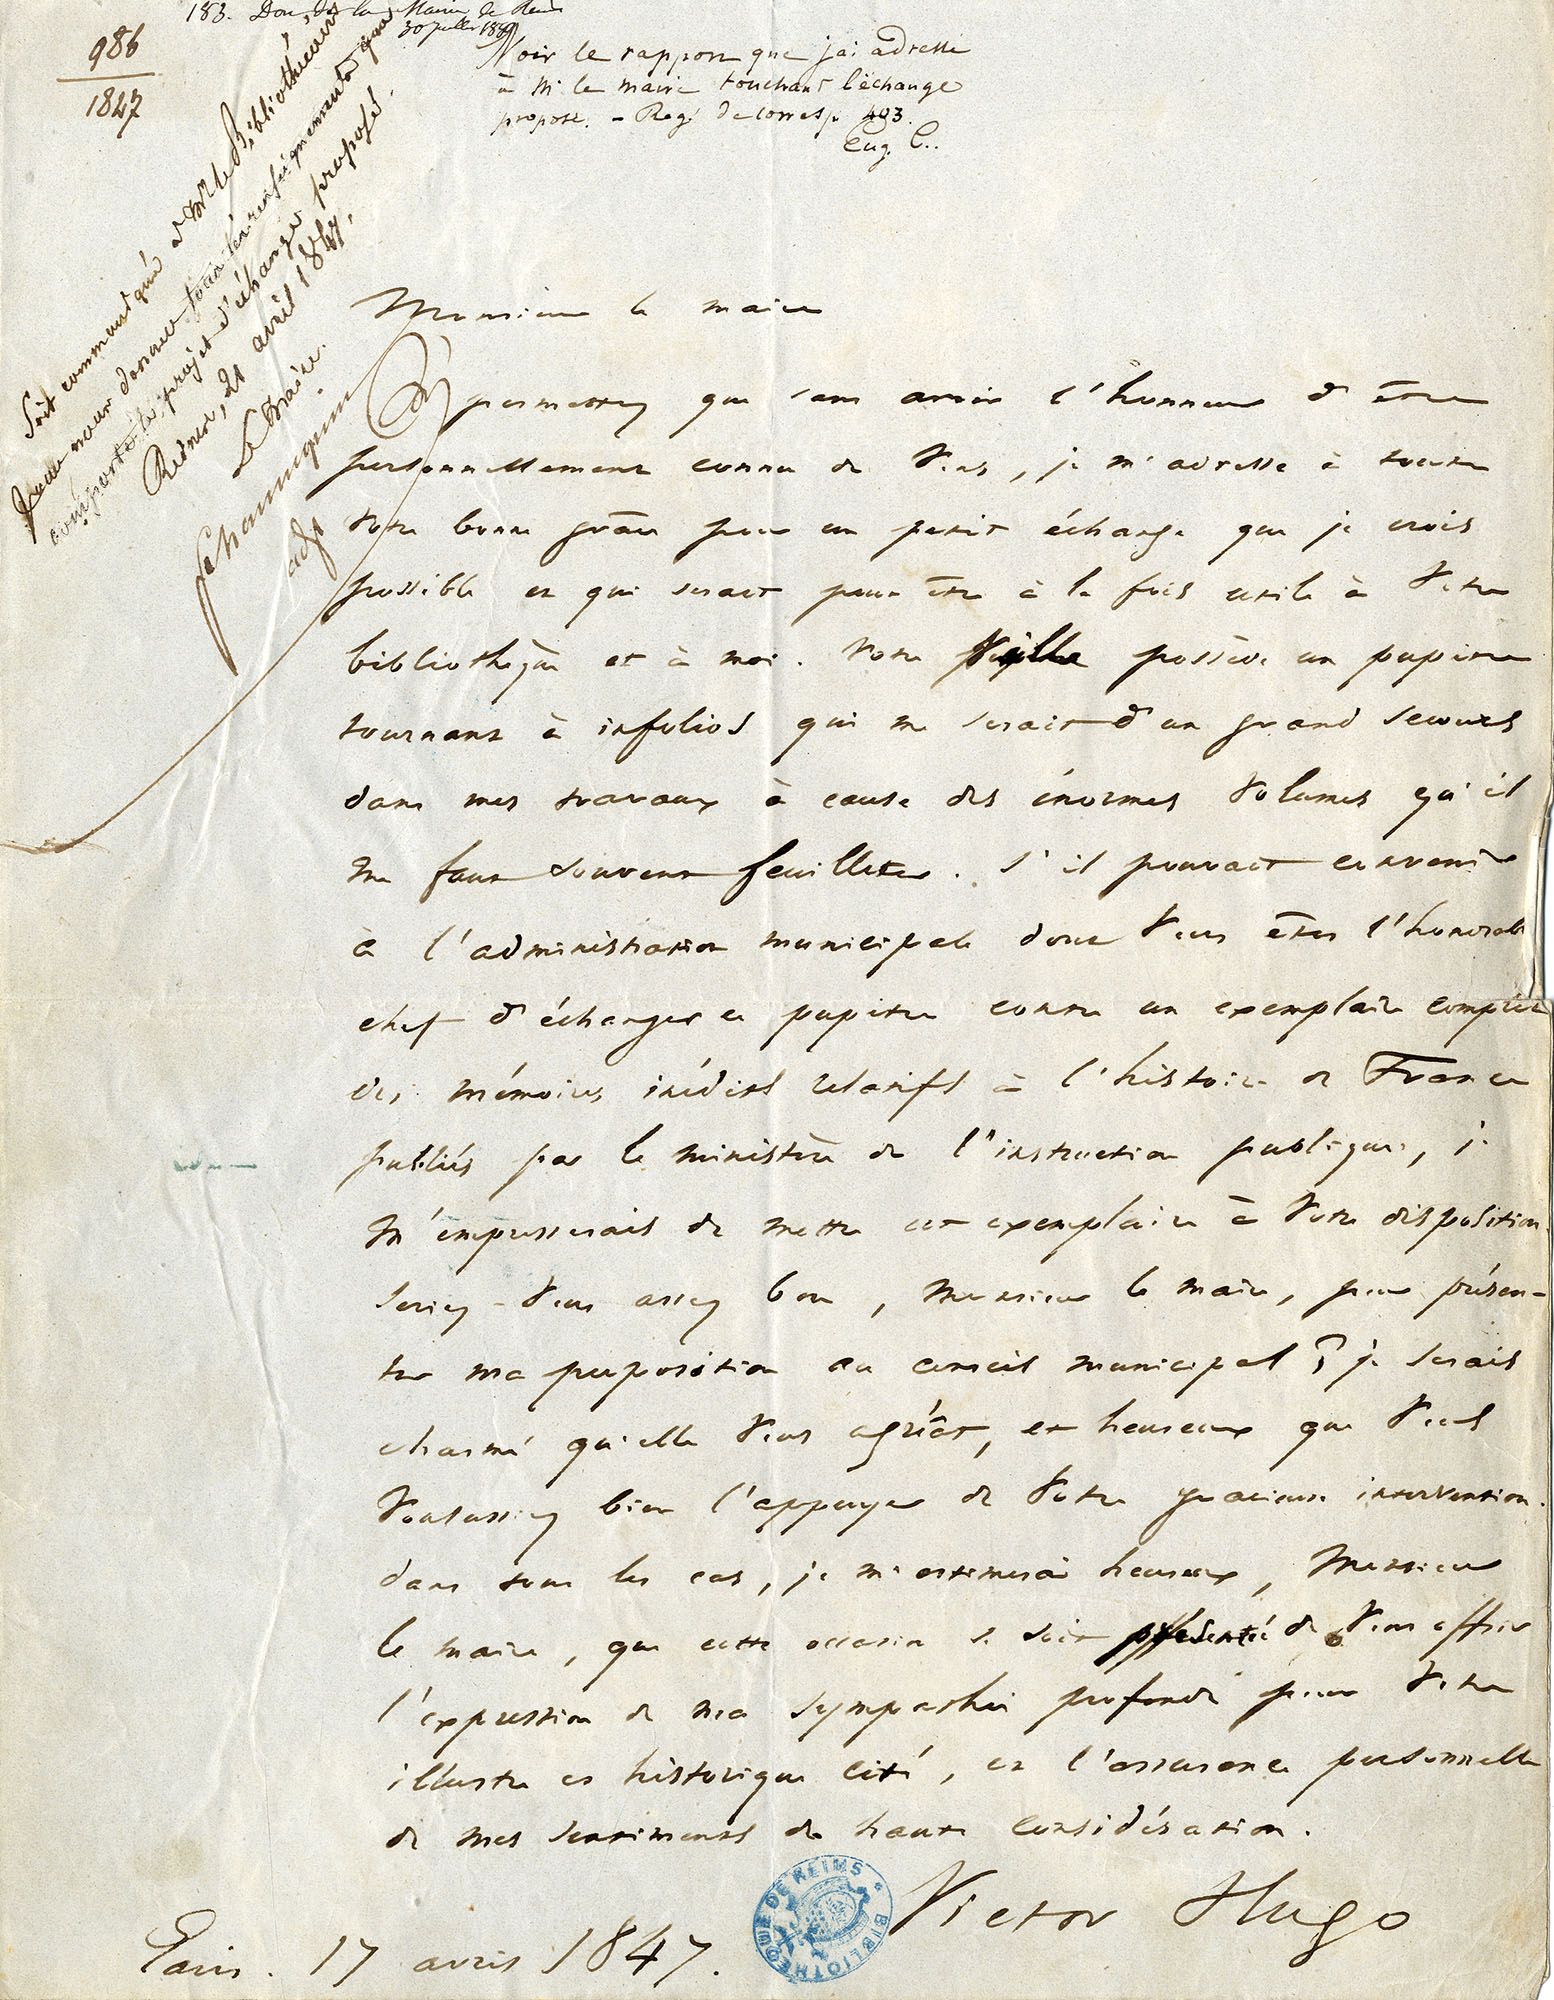 Lettre du 17 avril 1847 - Collection d'autographe, fonds Duchêne, Hugo Victor